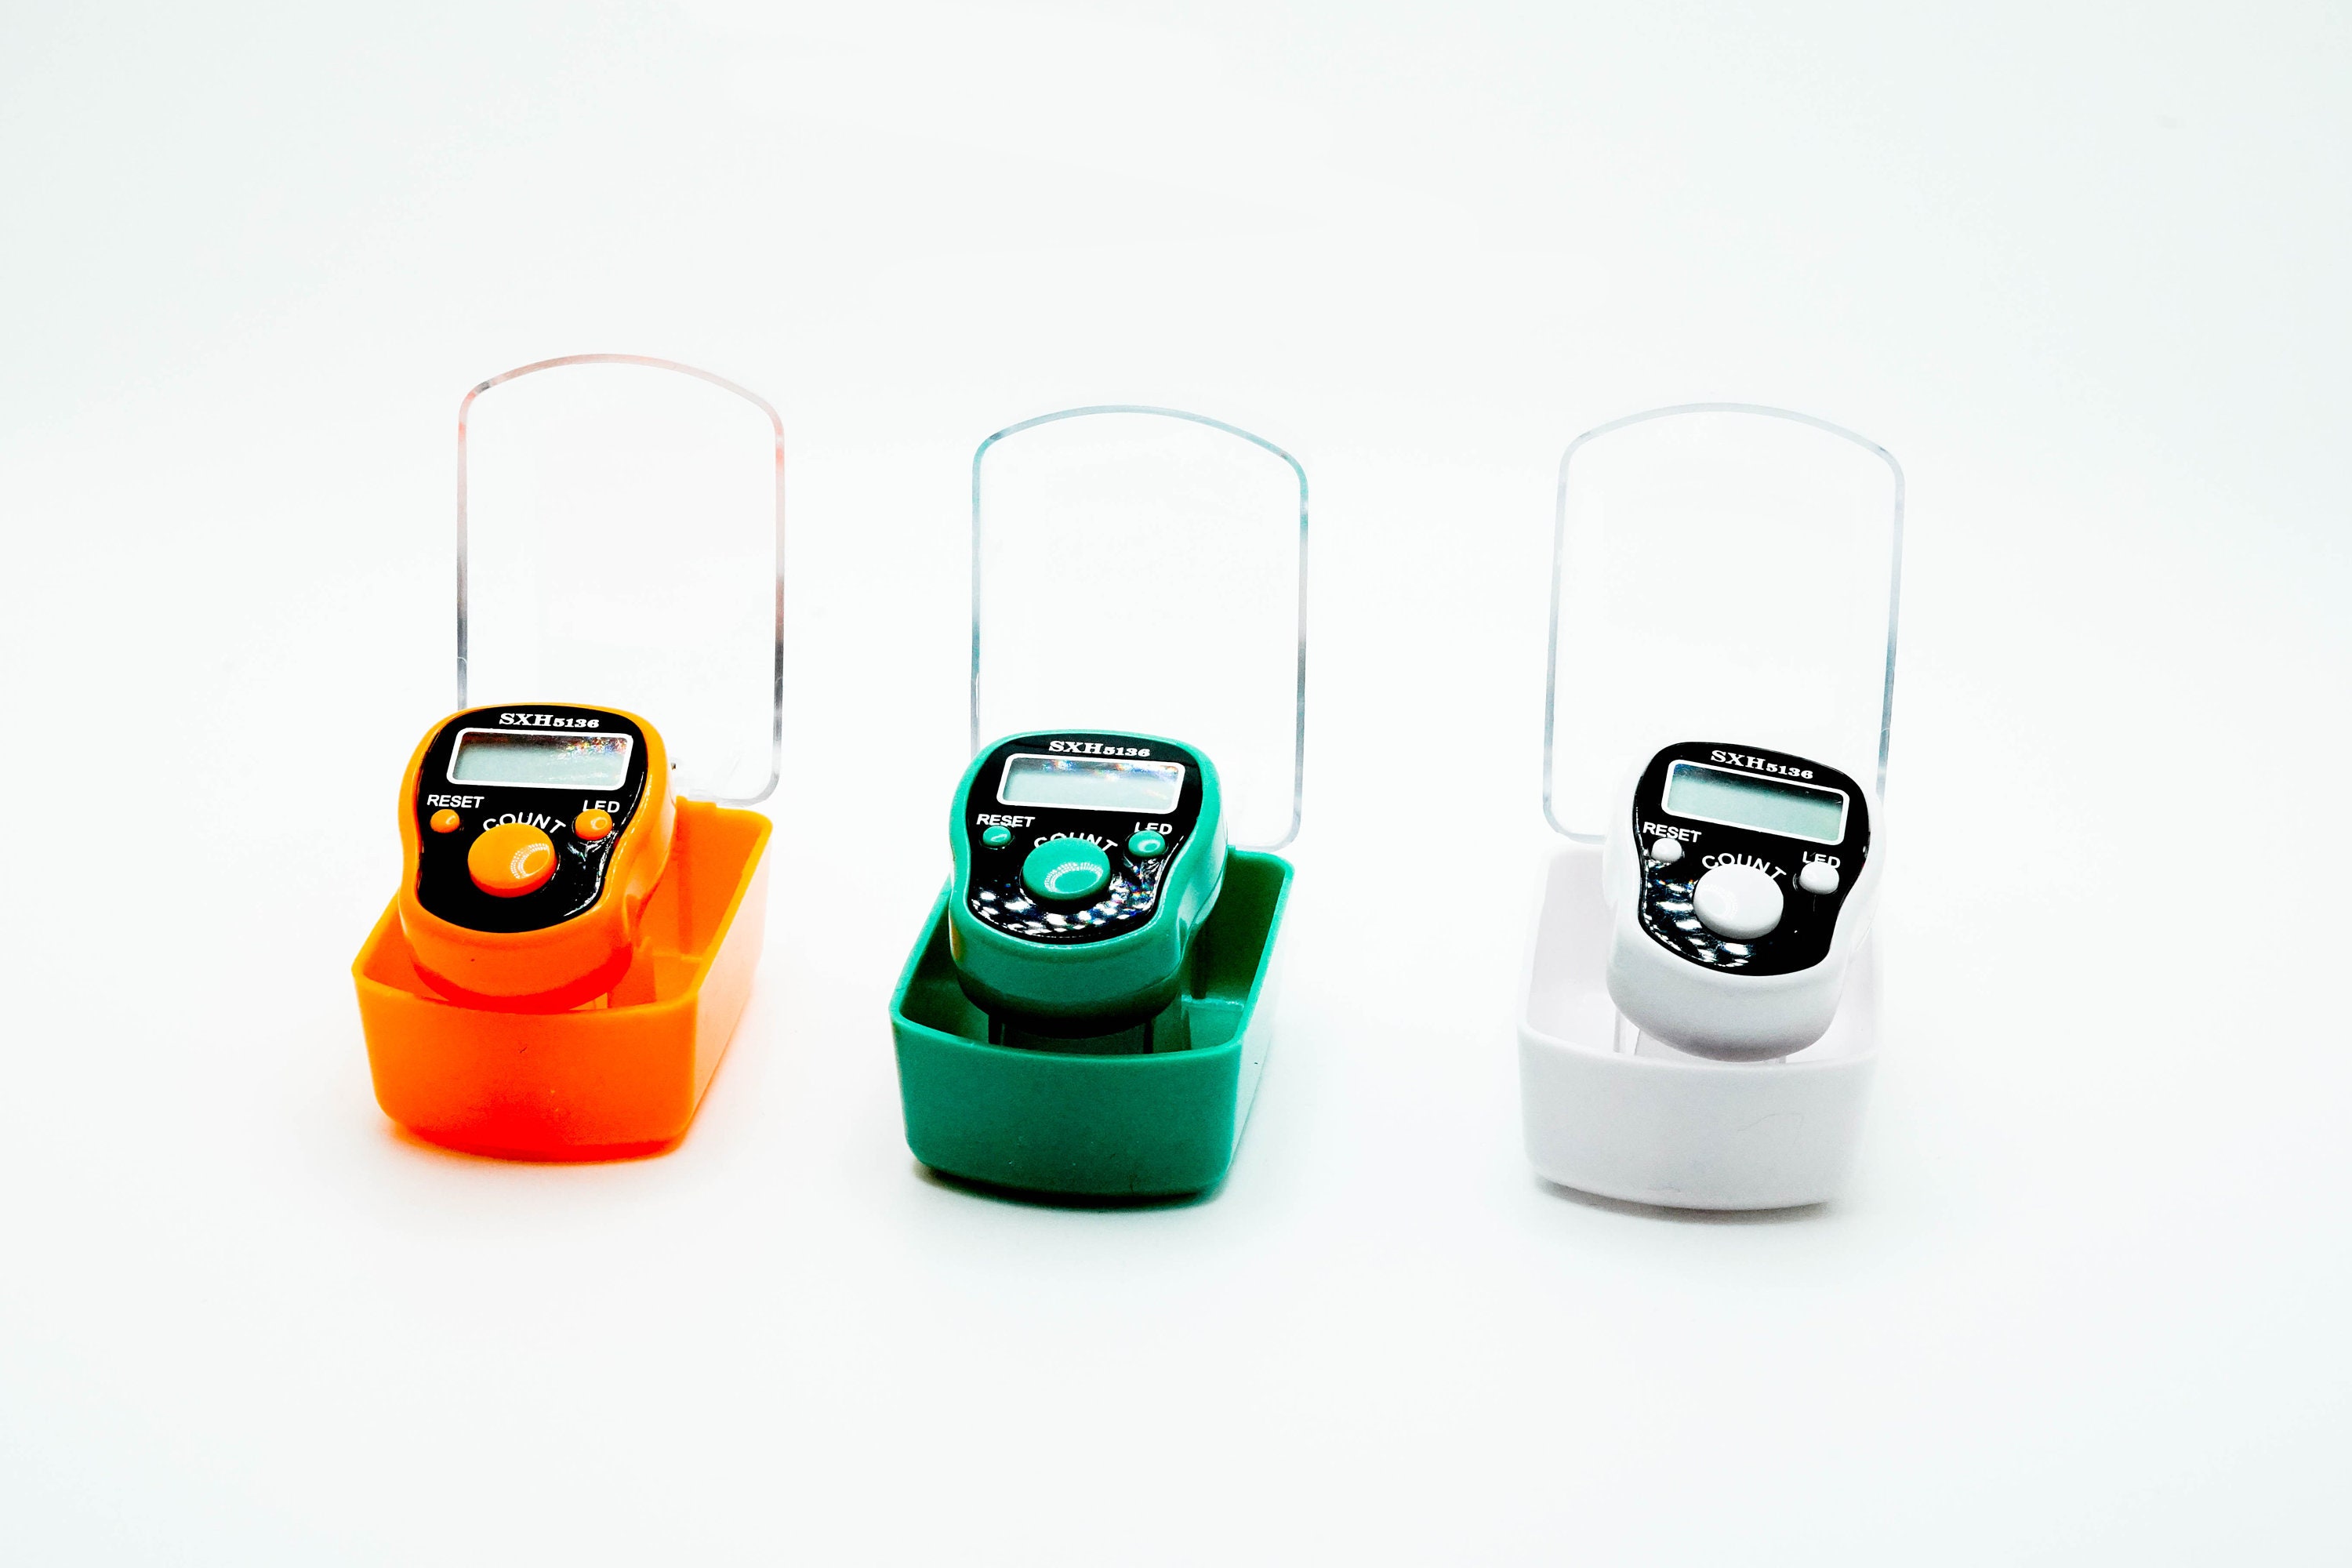 CG LED Finger Tally Counter, 5-Pack Digital Guinea